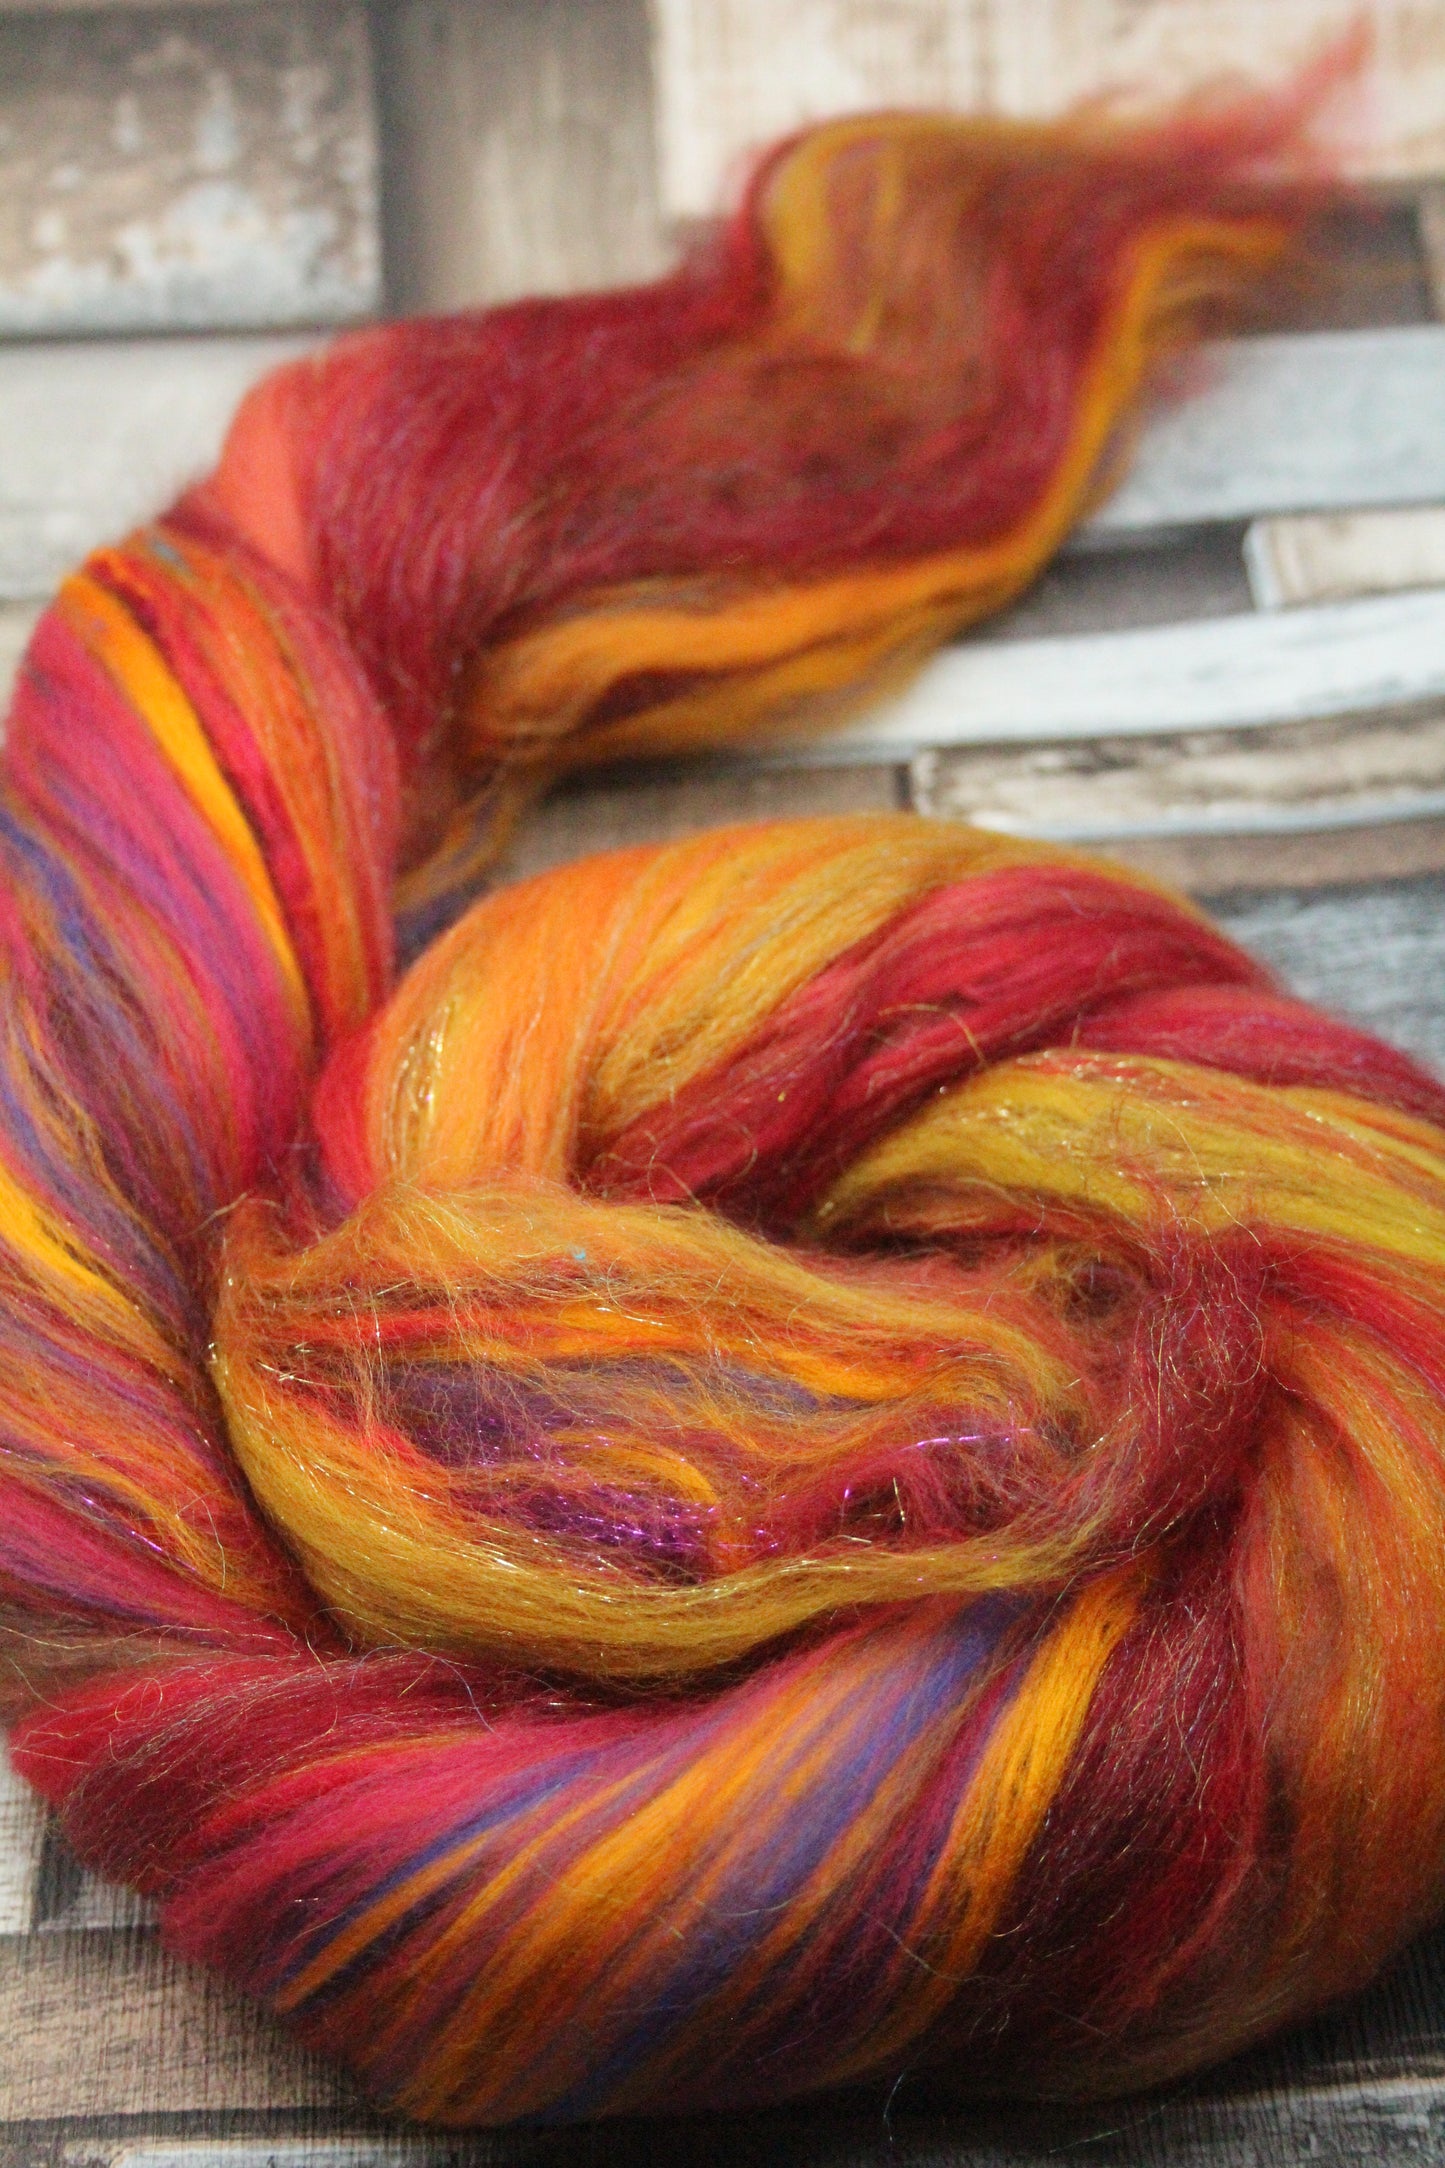 Merino Wool Blend - Red Brown Orange - 32 grams / 1.1 oz  - Fibre for felting, weaving or spinning